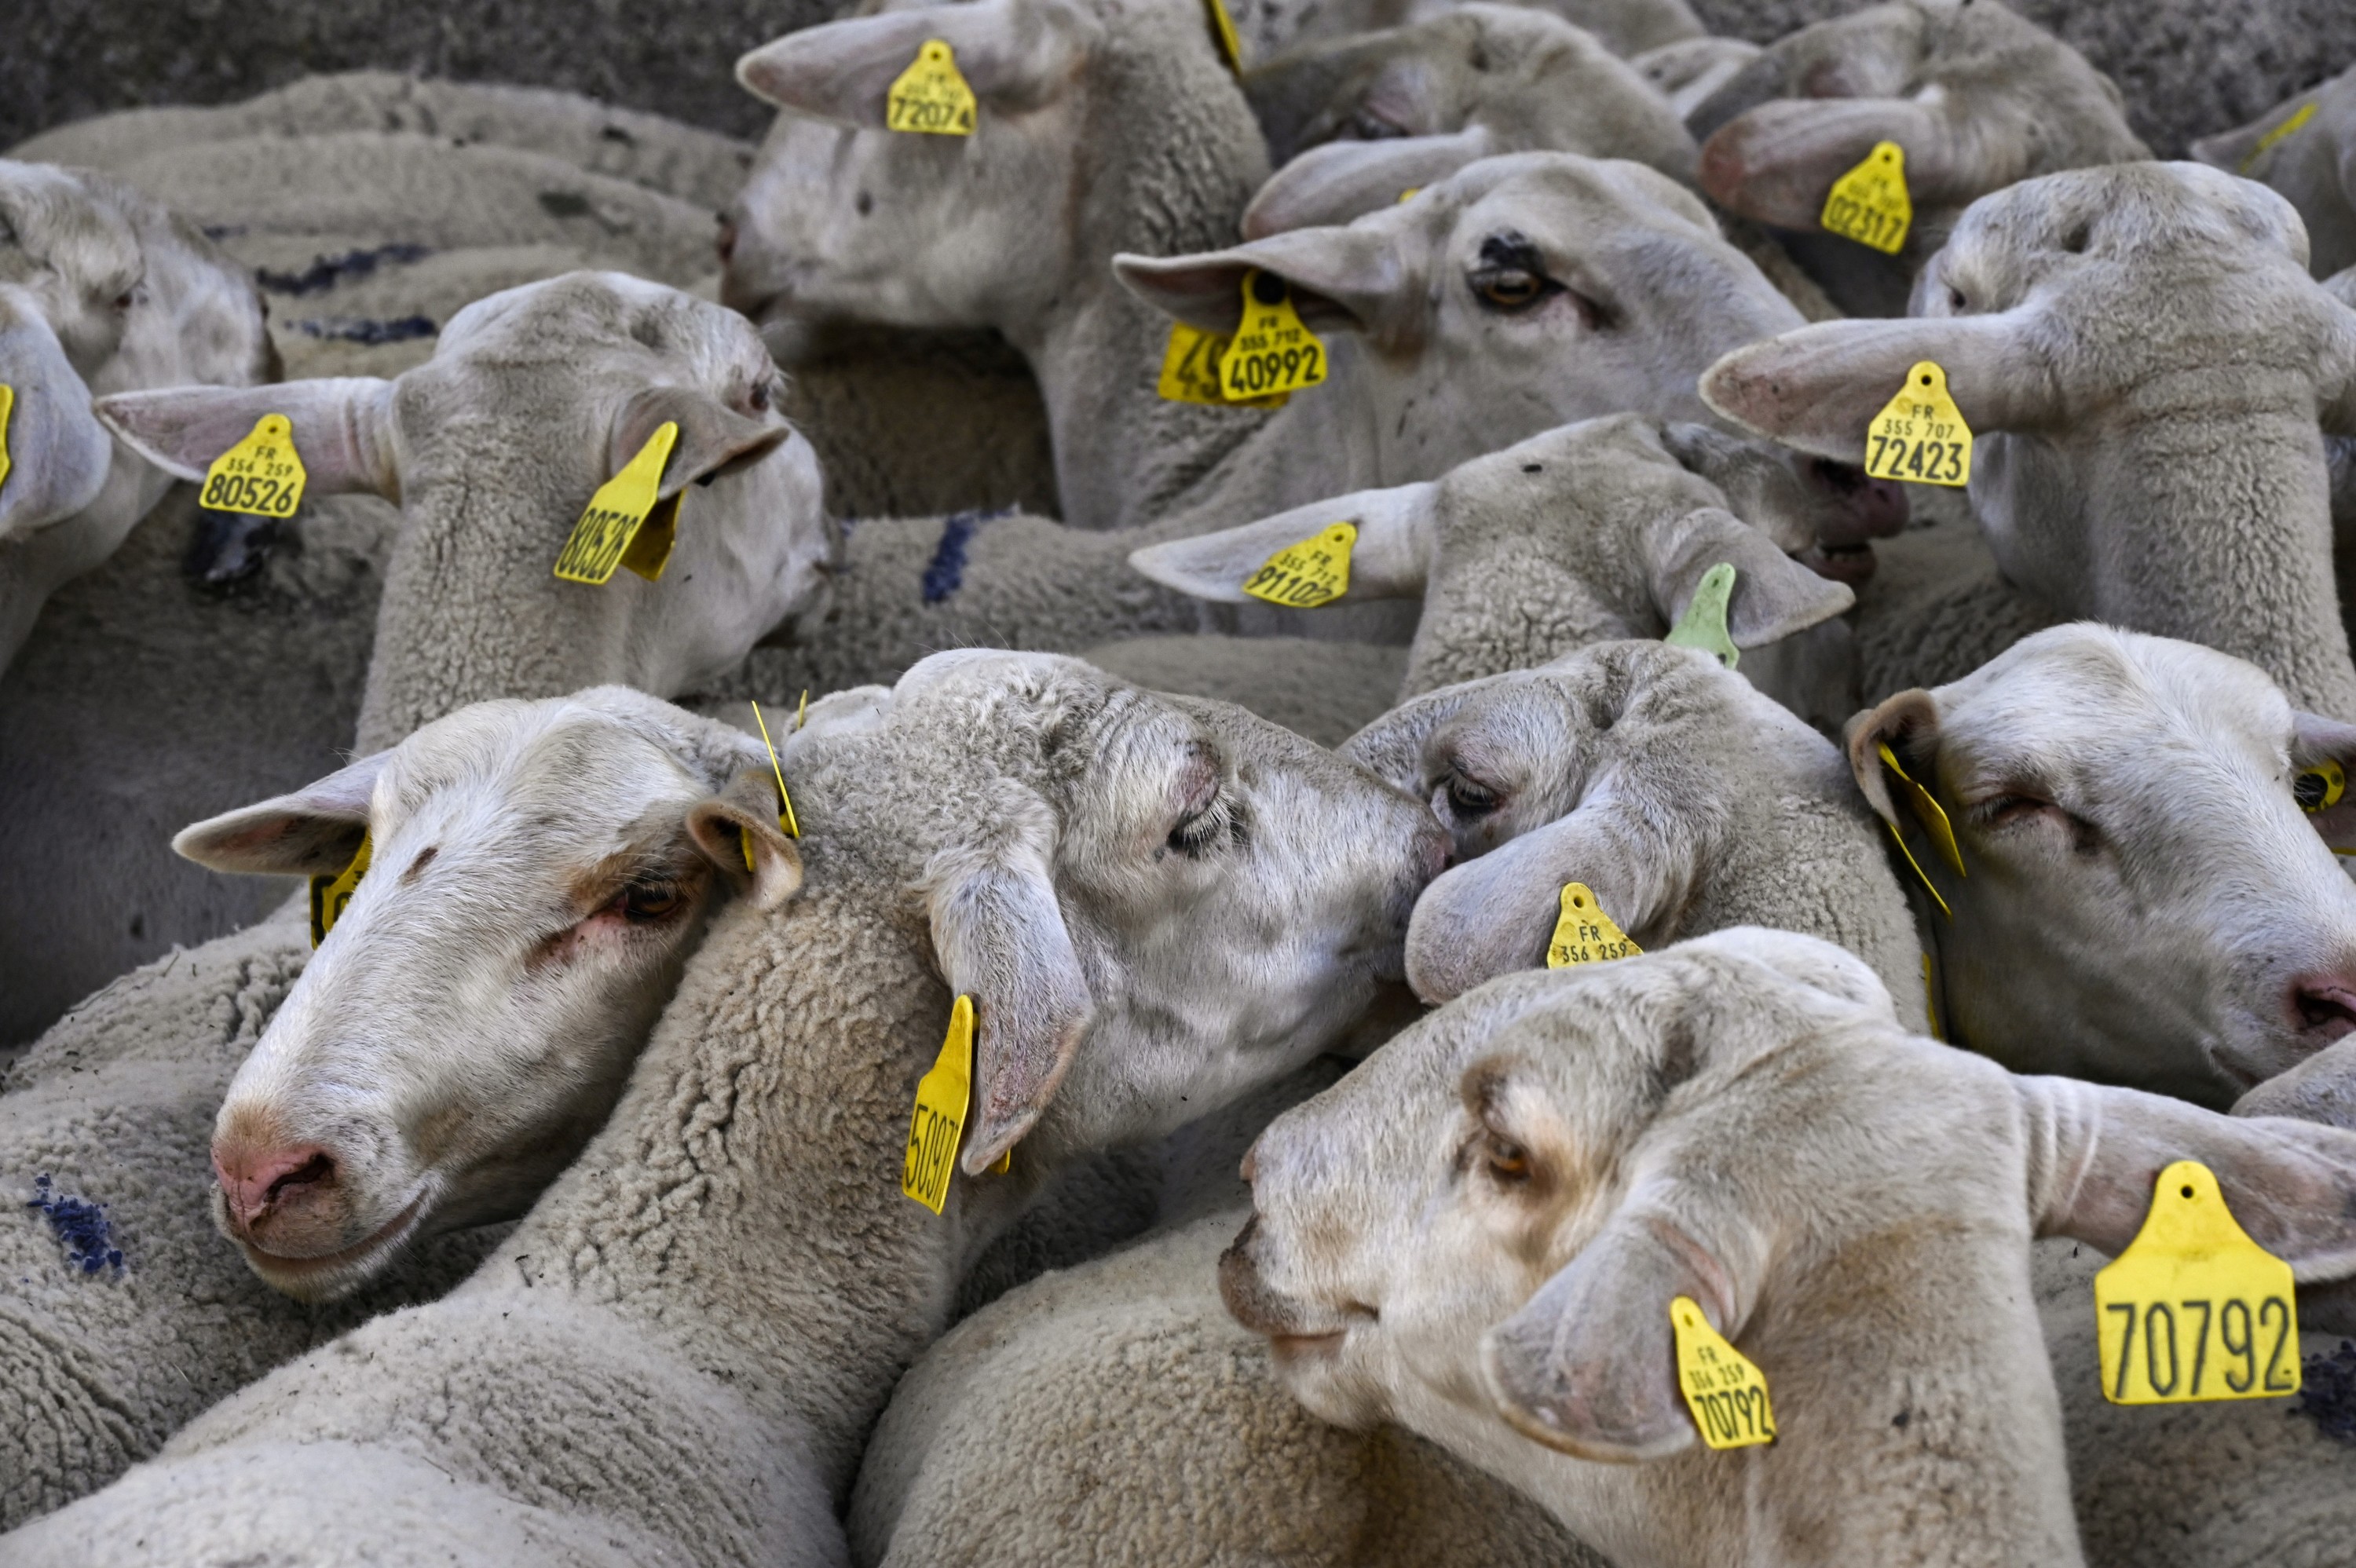 Un abattoir sauvage : 40 moutons entassés dans 12m2 retrouvés dans une cité à Nice